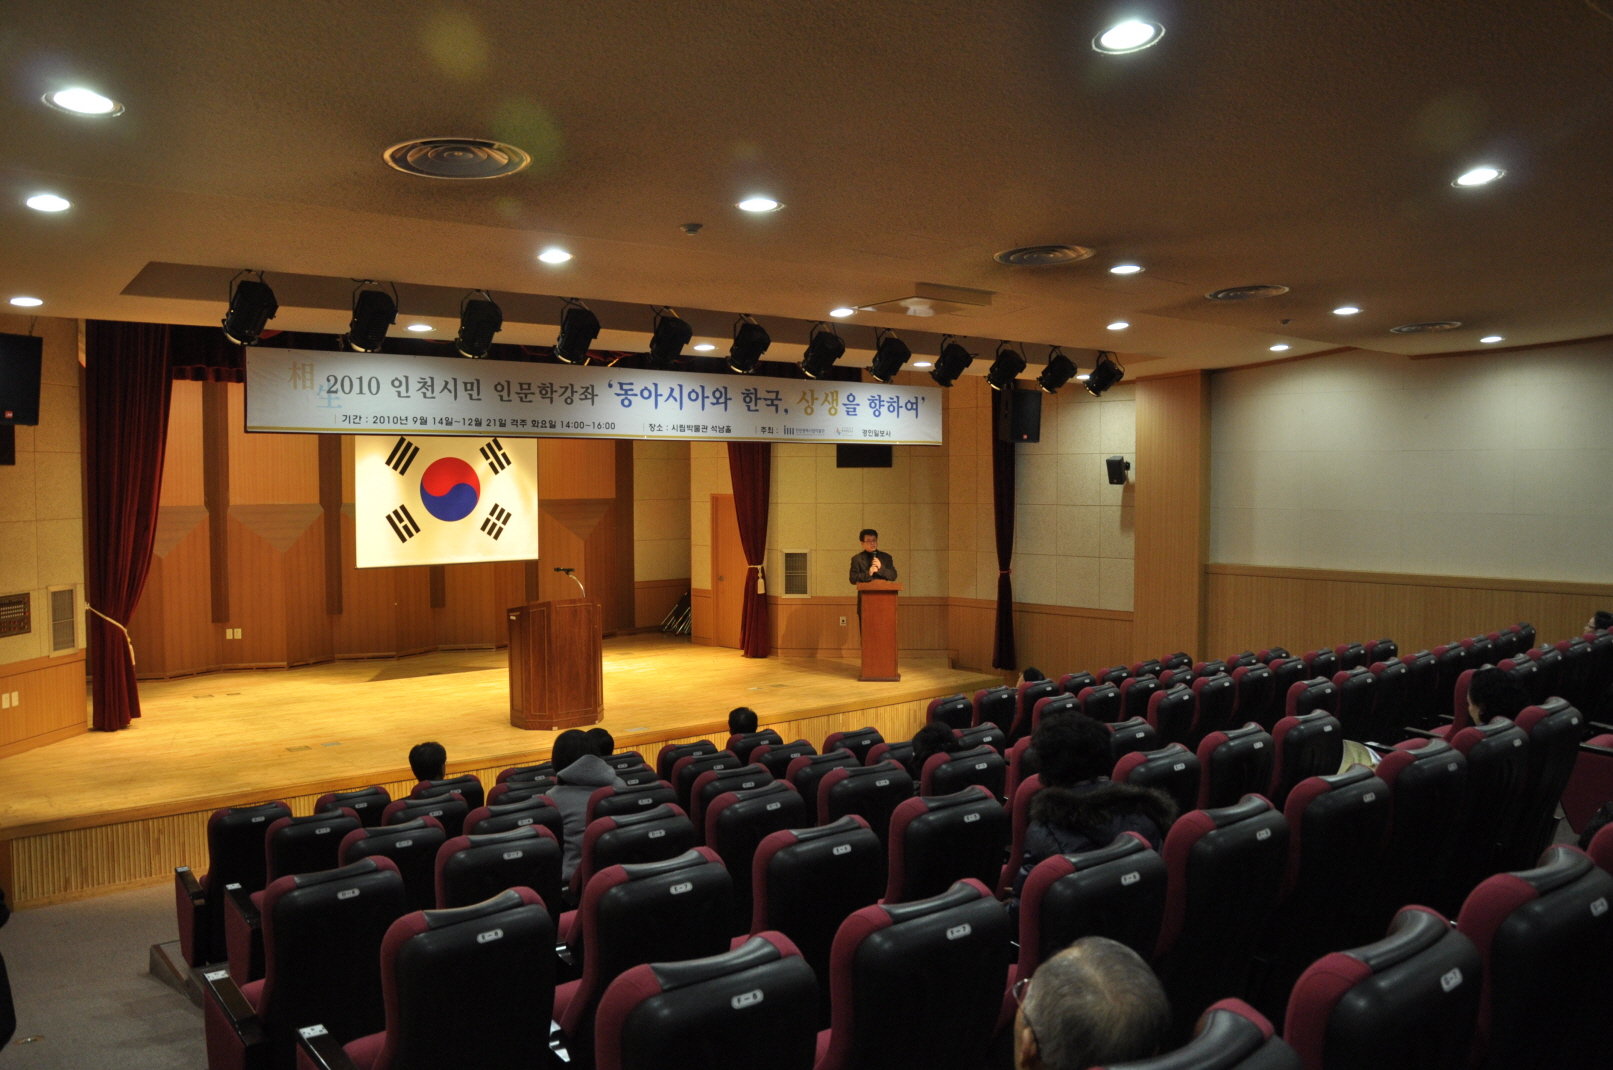 2010 인천시민 인문학강좌 하반기과정 수료식썸네일